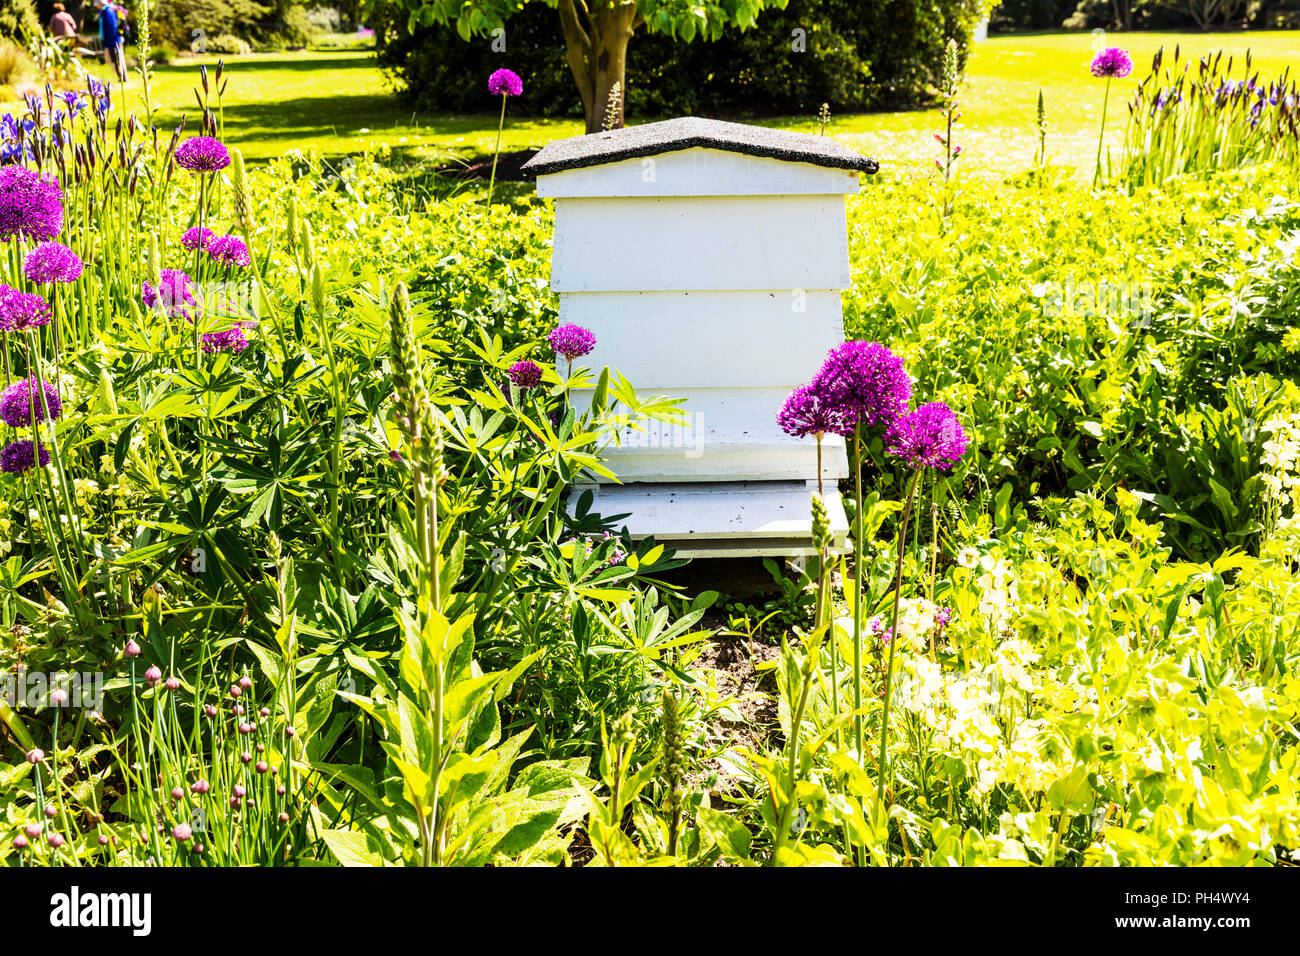 Ruche, le Beehive, urticaire, ruche, rucher, ruche en bois, ruches, ruches, ruche, rucher en bois blanc, les ruchers, ruche Beehaus, jardin, jardin Banque D'Images